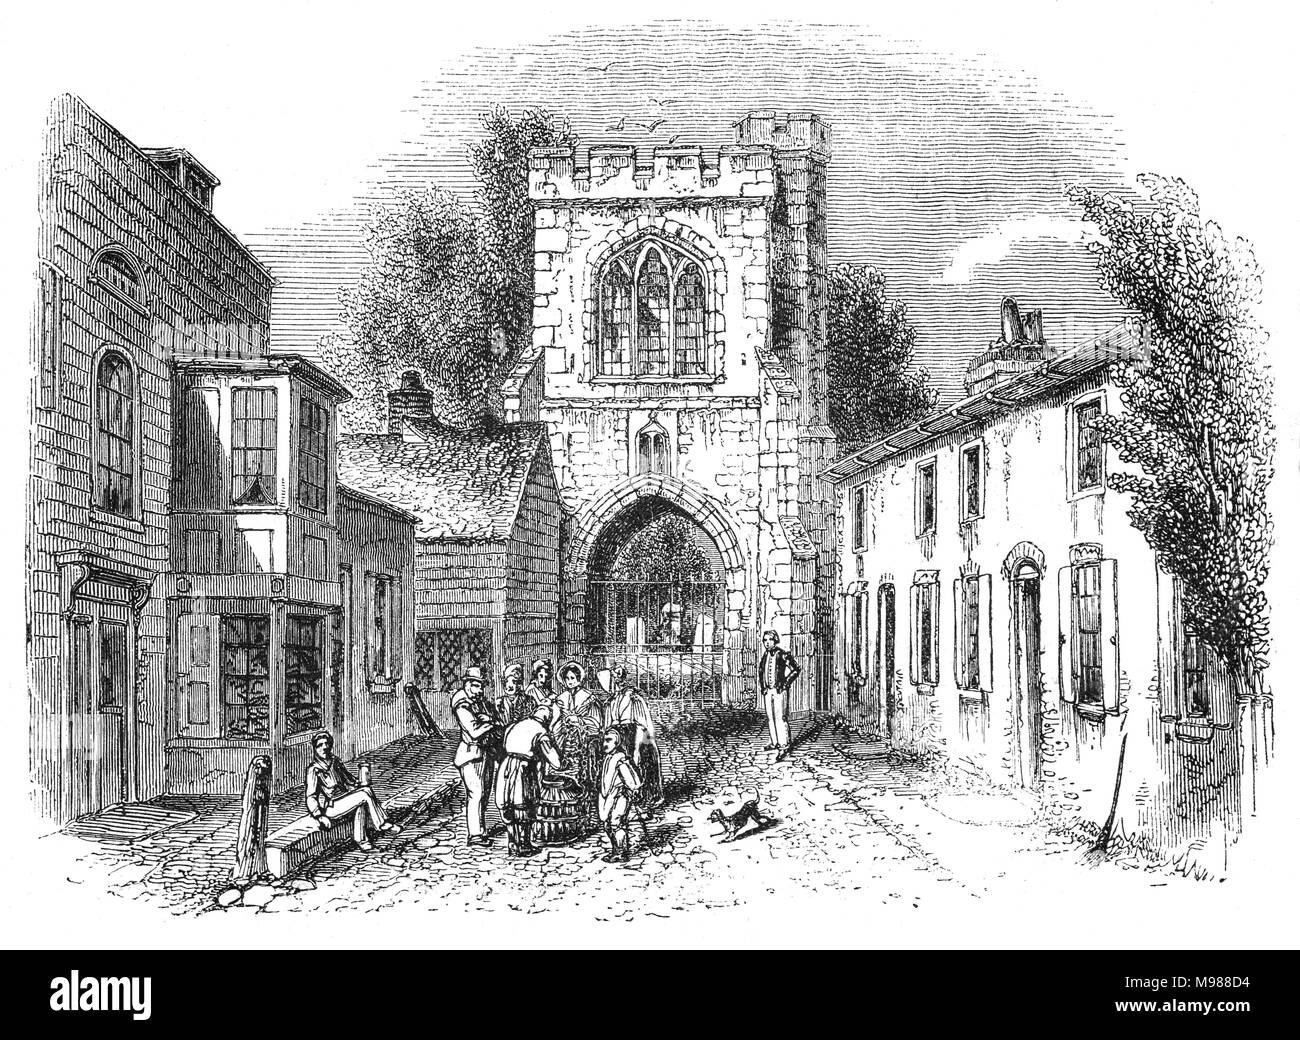 La sirena de incendios (Gate) y los toques de queda, construida probablemente en el momento de la Abadesa Felton es mencionado por primera vez en 1400. Era parte de Barking Abbey, un monasterio benedictino fundado en c666 y cerrada en 1539 como parte de la disolución. El gateway también era conocida como la Torre de toque de queda o cementerio Gate cuando más tarde se convirtió en la entrada al cementerio parroquial. Barking, Essex, Inglaterra Foto de stock